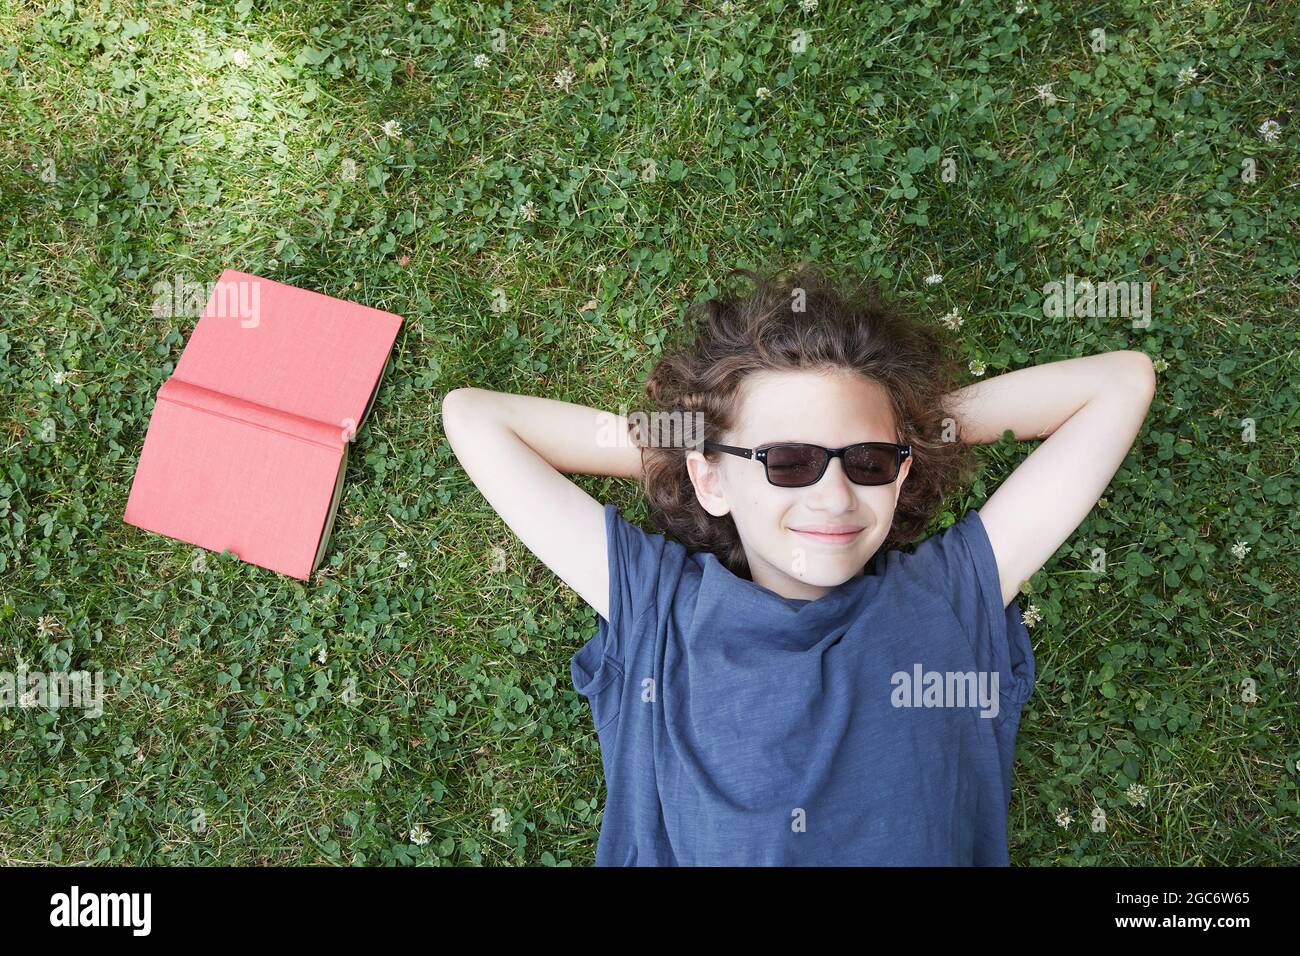 Junge liegt im Gras und lächelt mit dem Buch Stockfoto